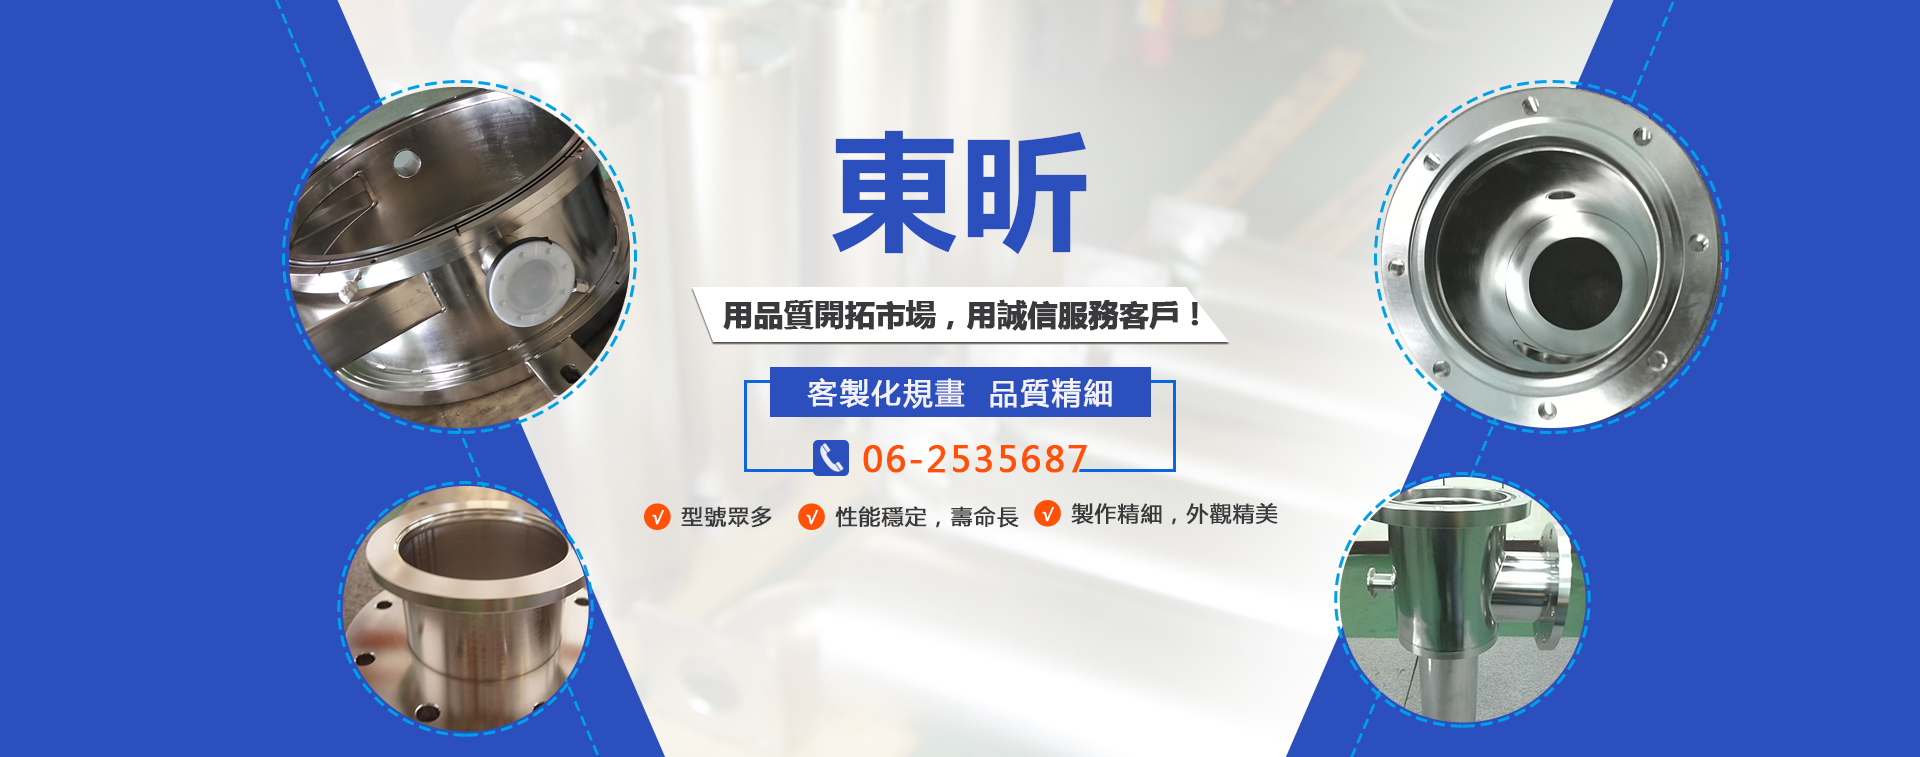 東昕實業社不鏽鋼加工製造廠, 歡迎來電聯絡062535687